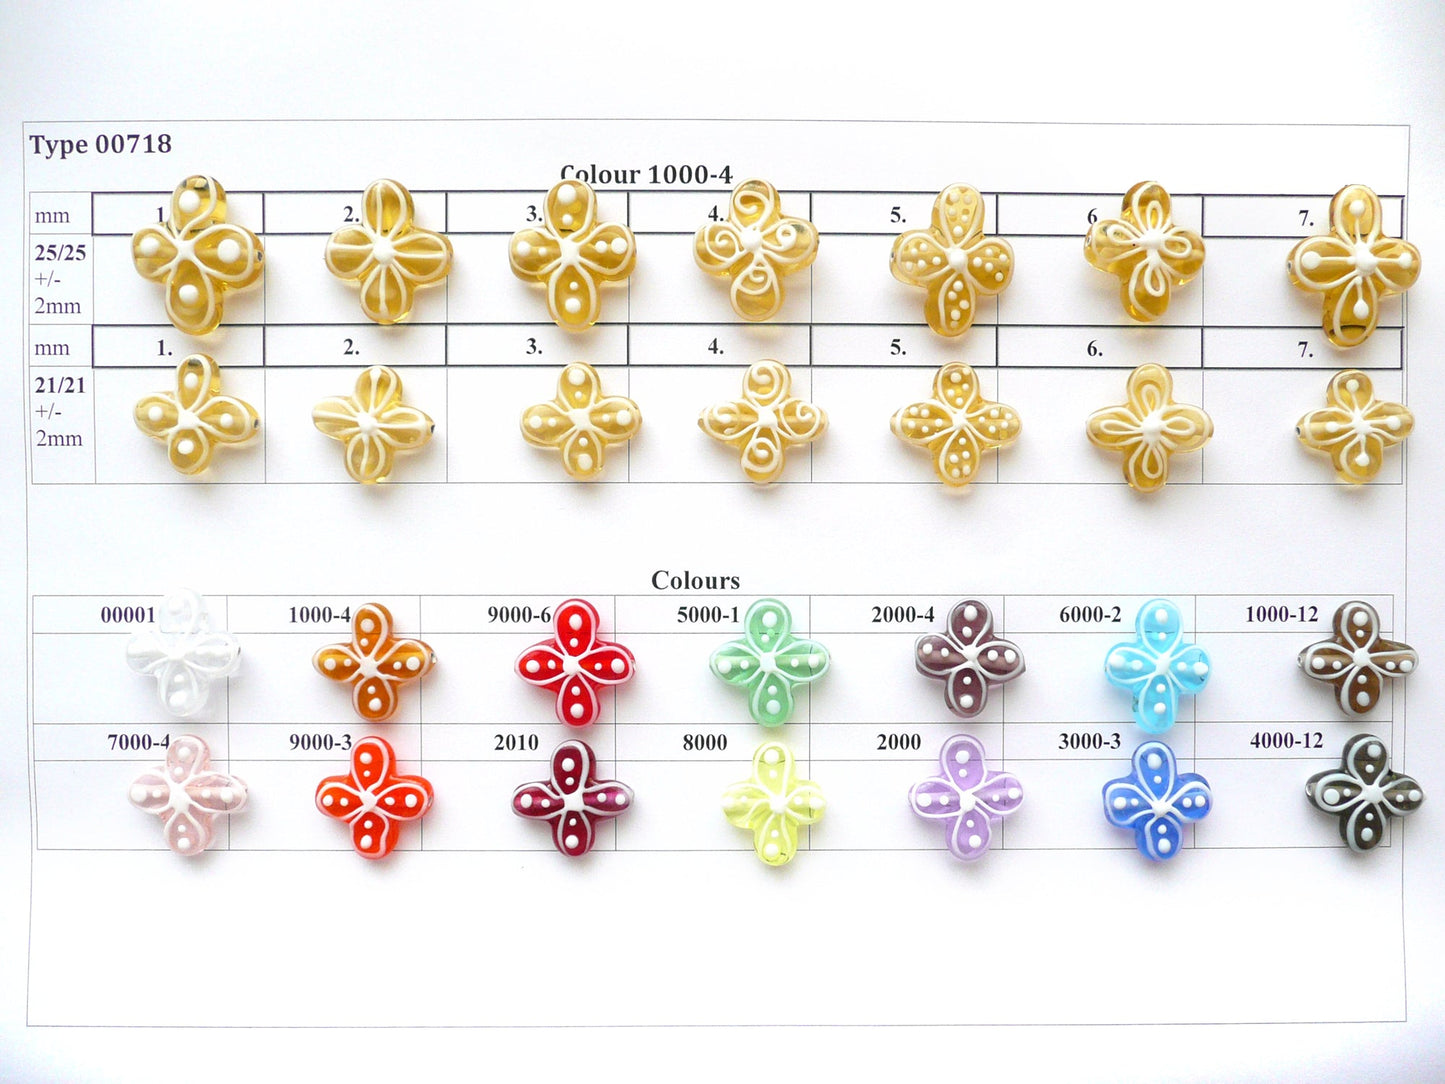 30 pcs Flower Lampwork Beads 718 / Design 1, Handmade, Preciosa Glass, Czech Republic